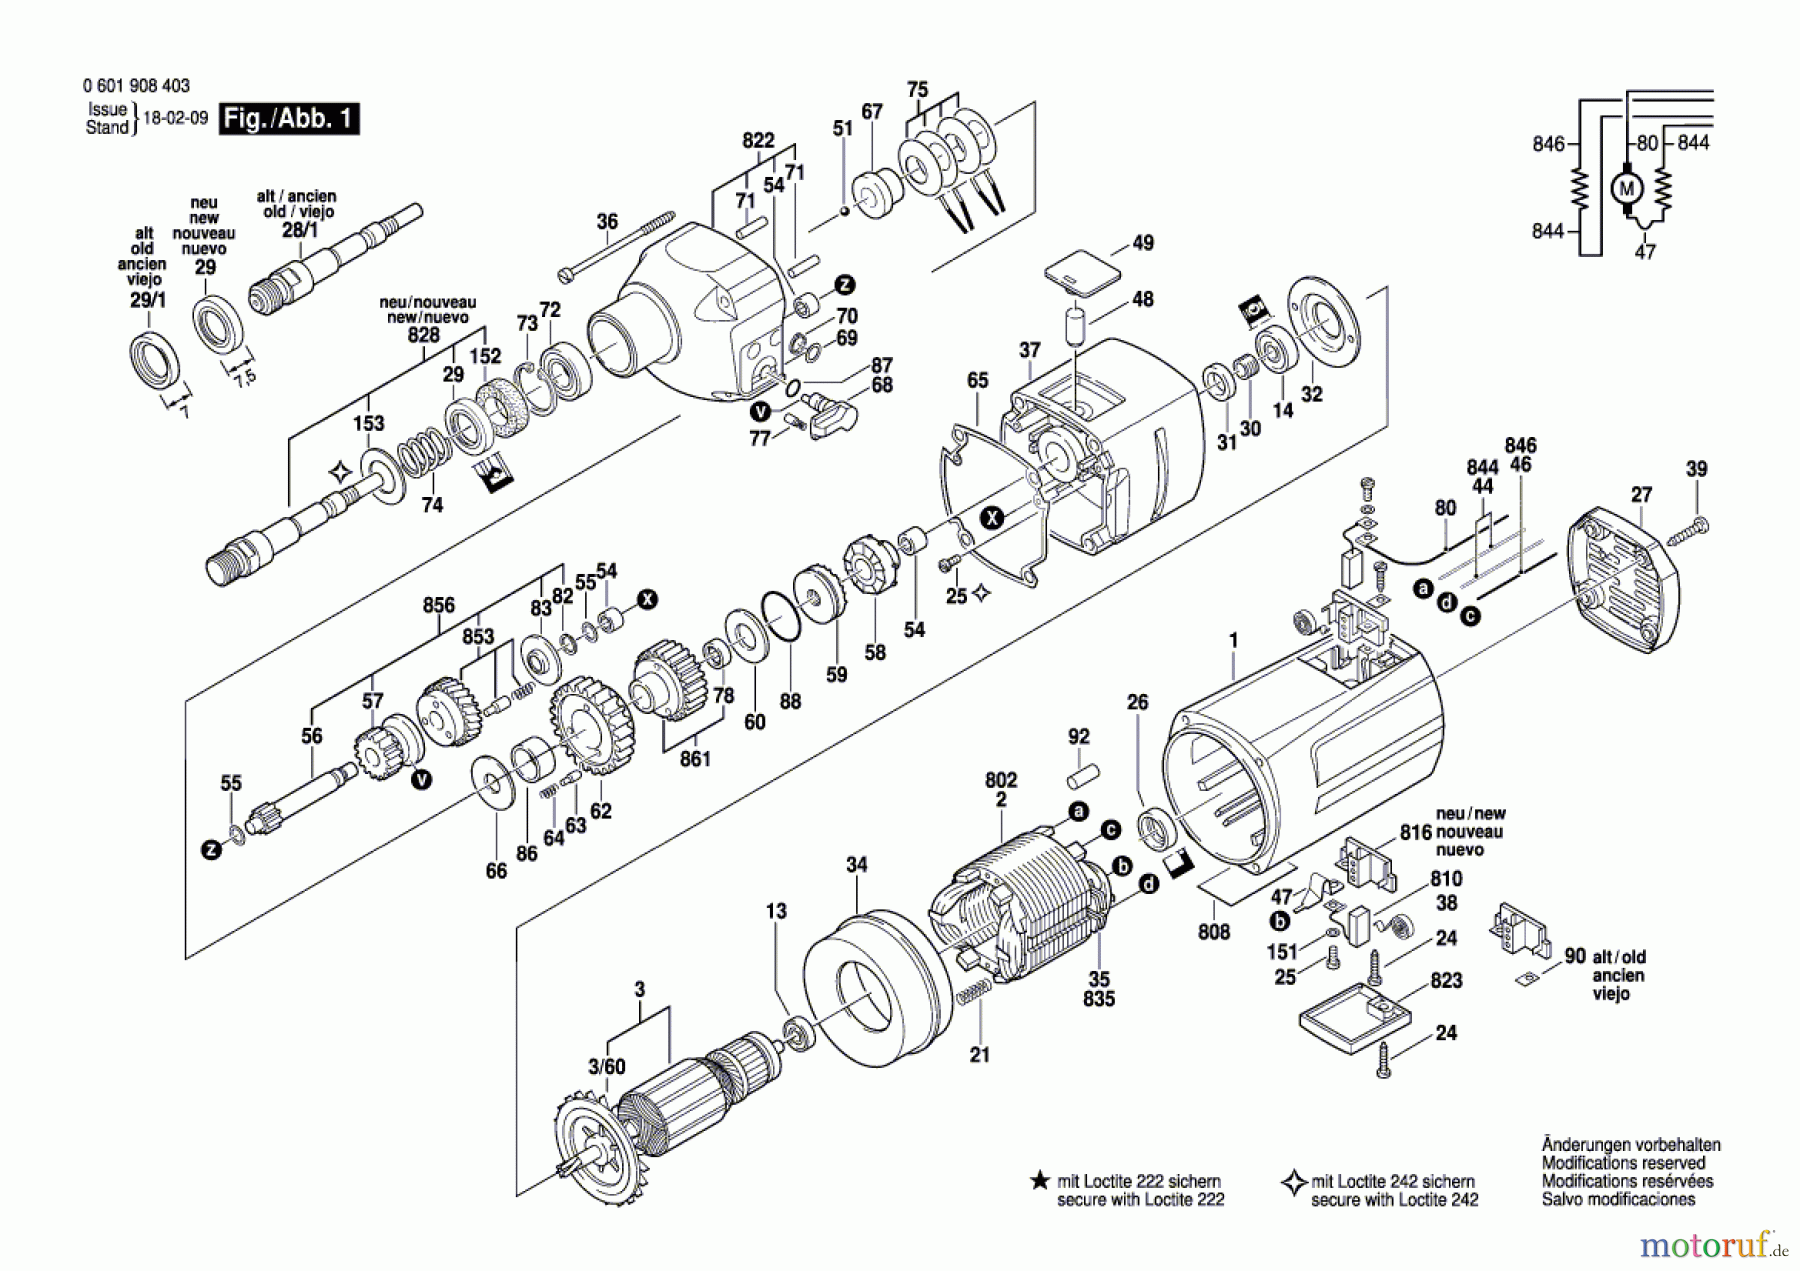  Bosch Werkzeug Bohrmaschine 1908 Seite 1